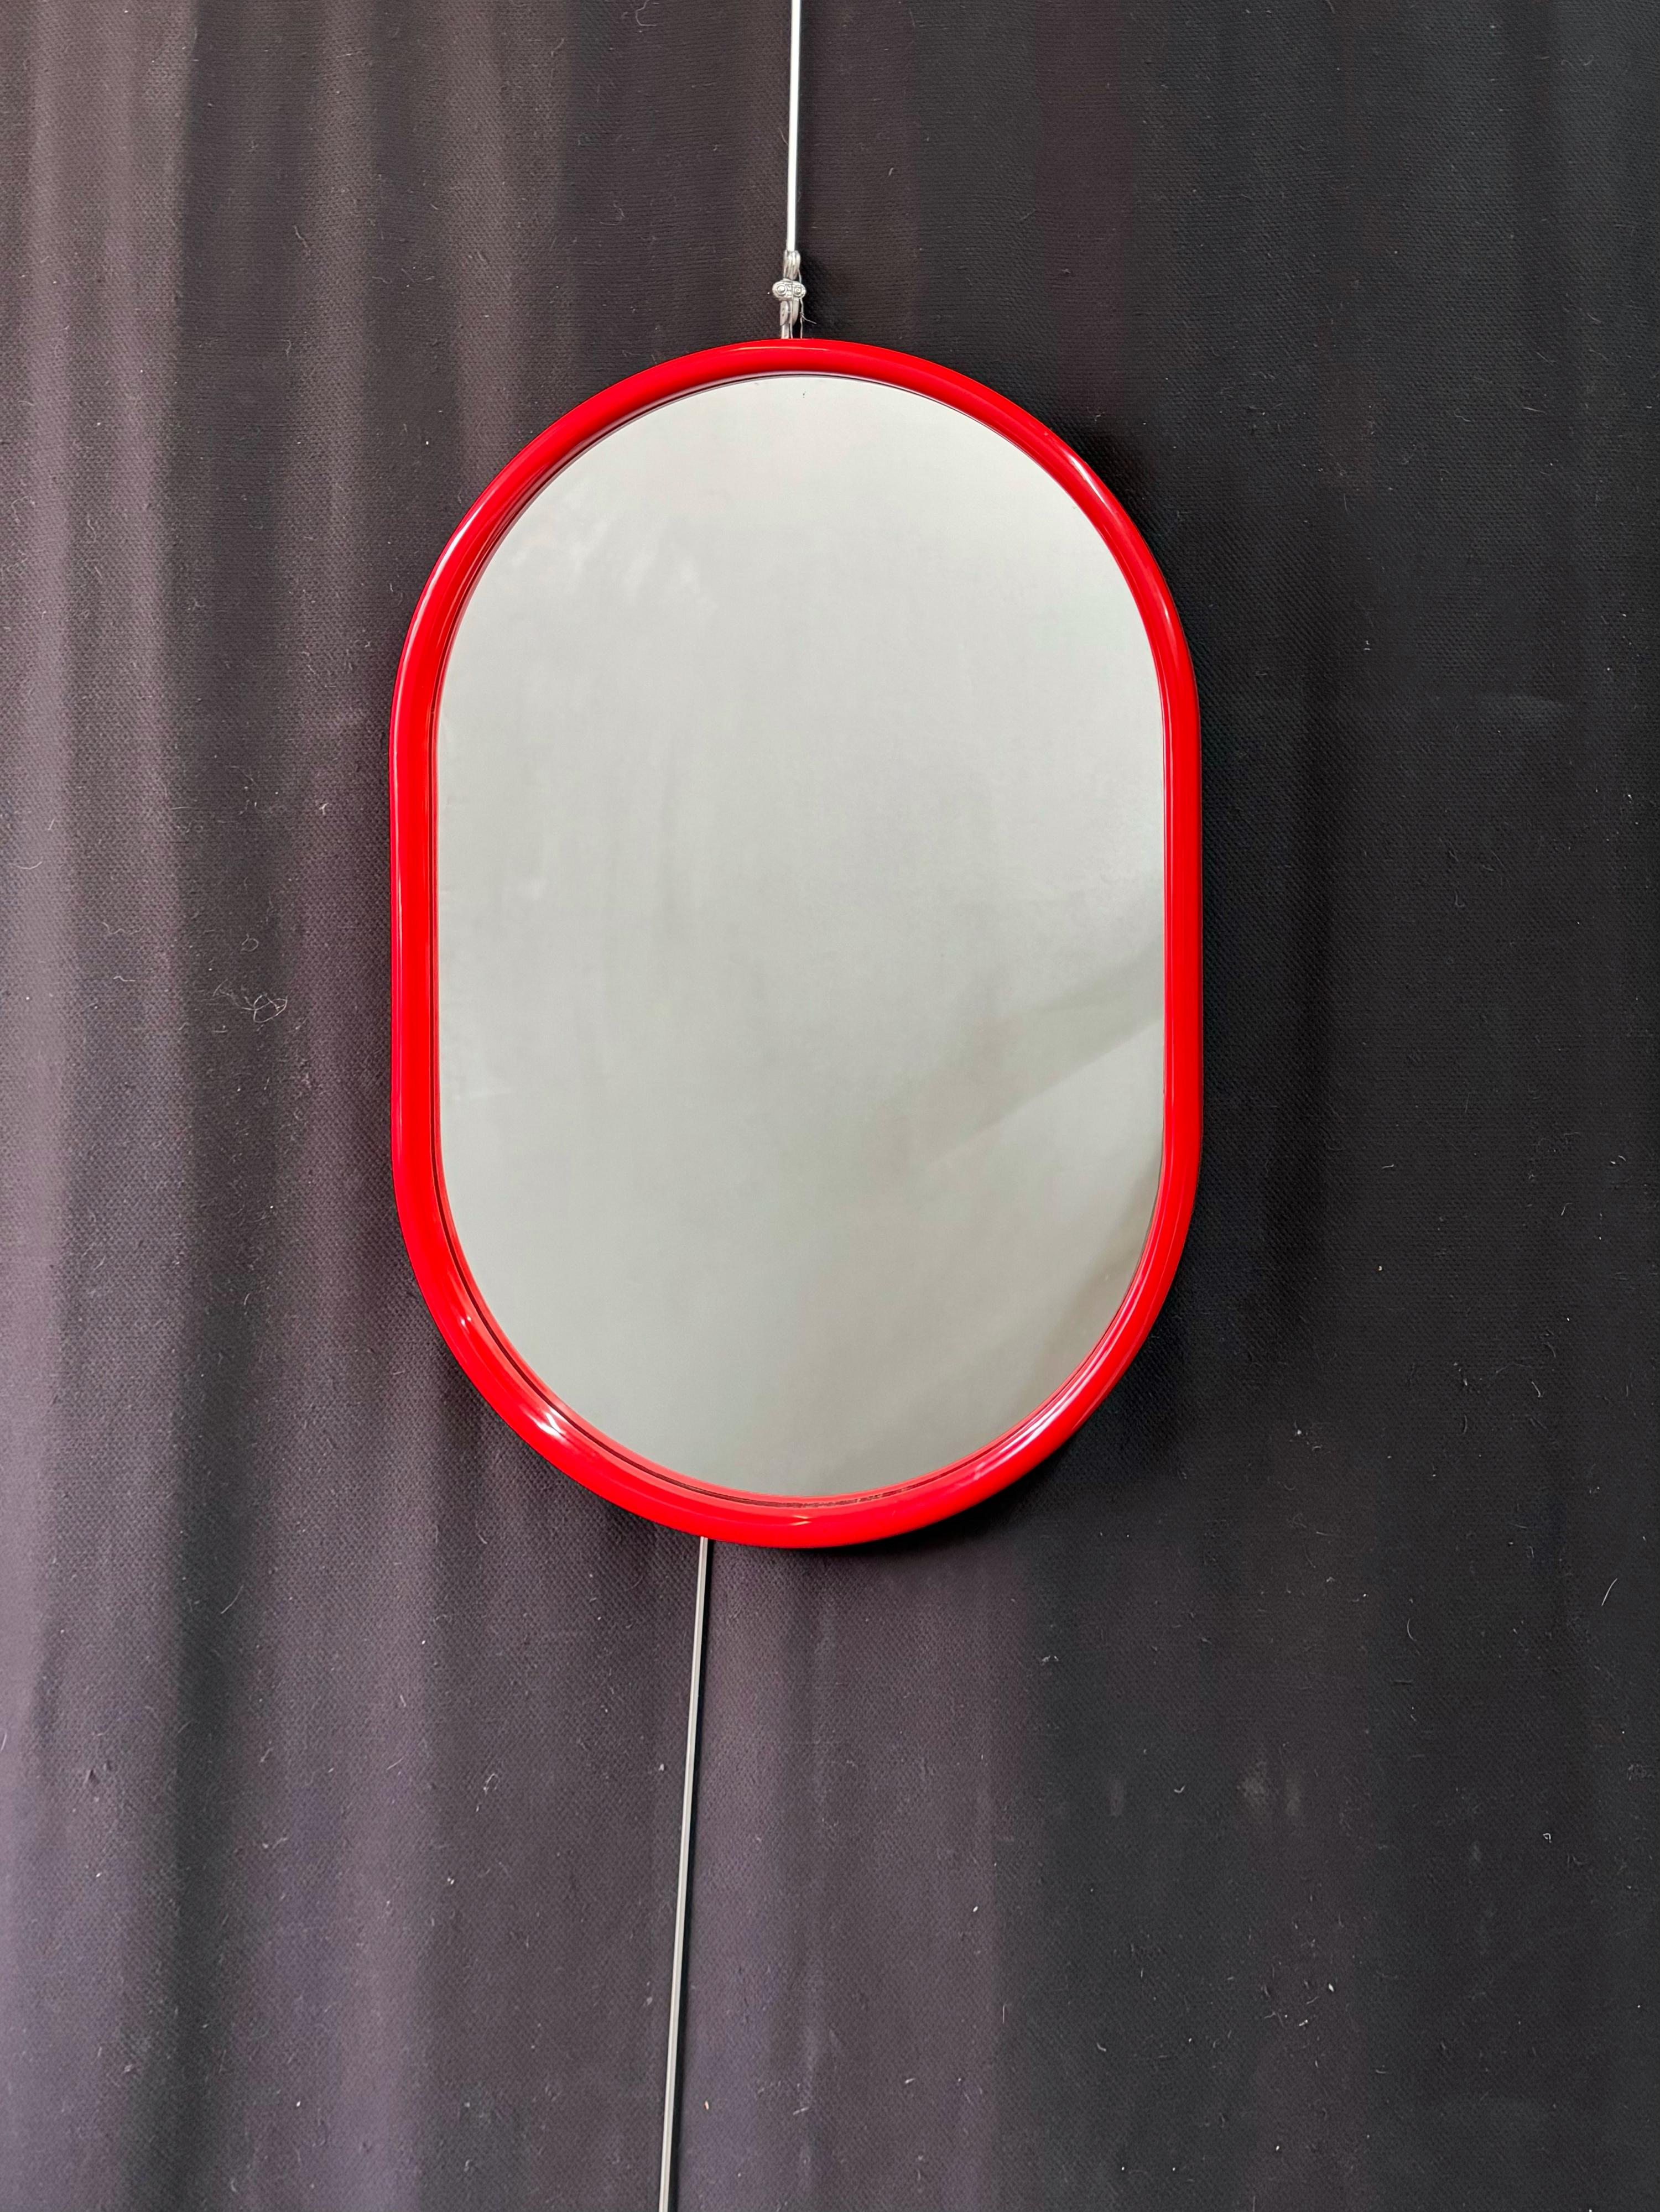 Miroir mural italien Mid Mod des années 1960 avec un cadre acrylique incurvé rouge vif dans une silhouette ovale. Miroir de courtoisie parfait pour refléter votre style et mettre en valeur votre espace !

Le miroir mesure 31